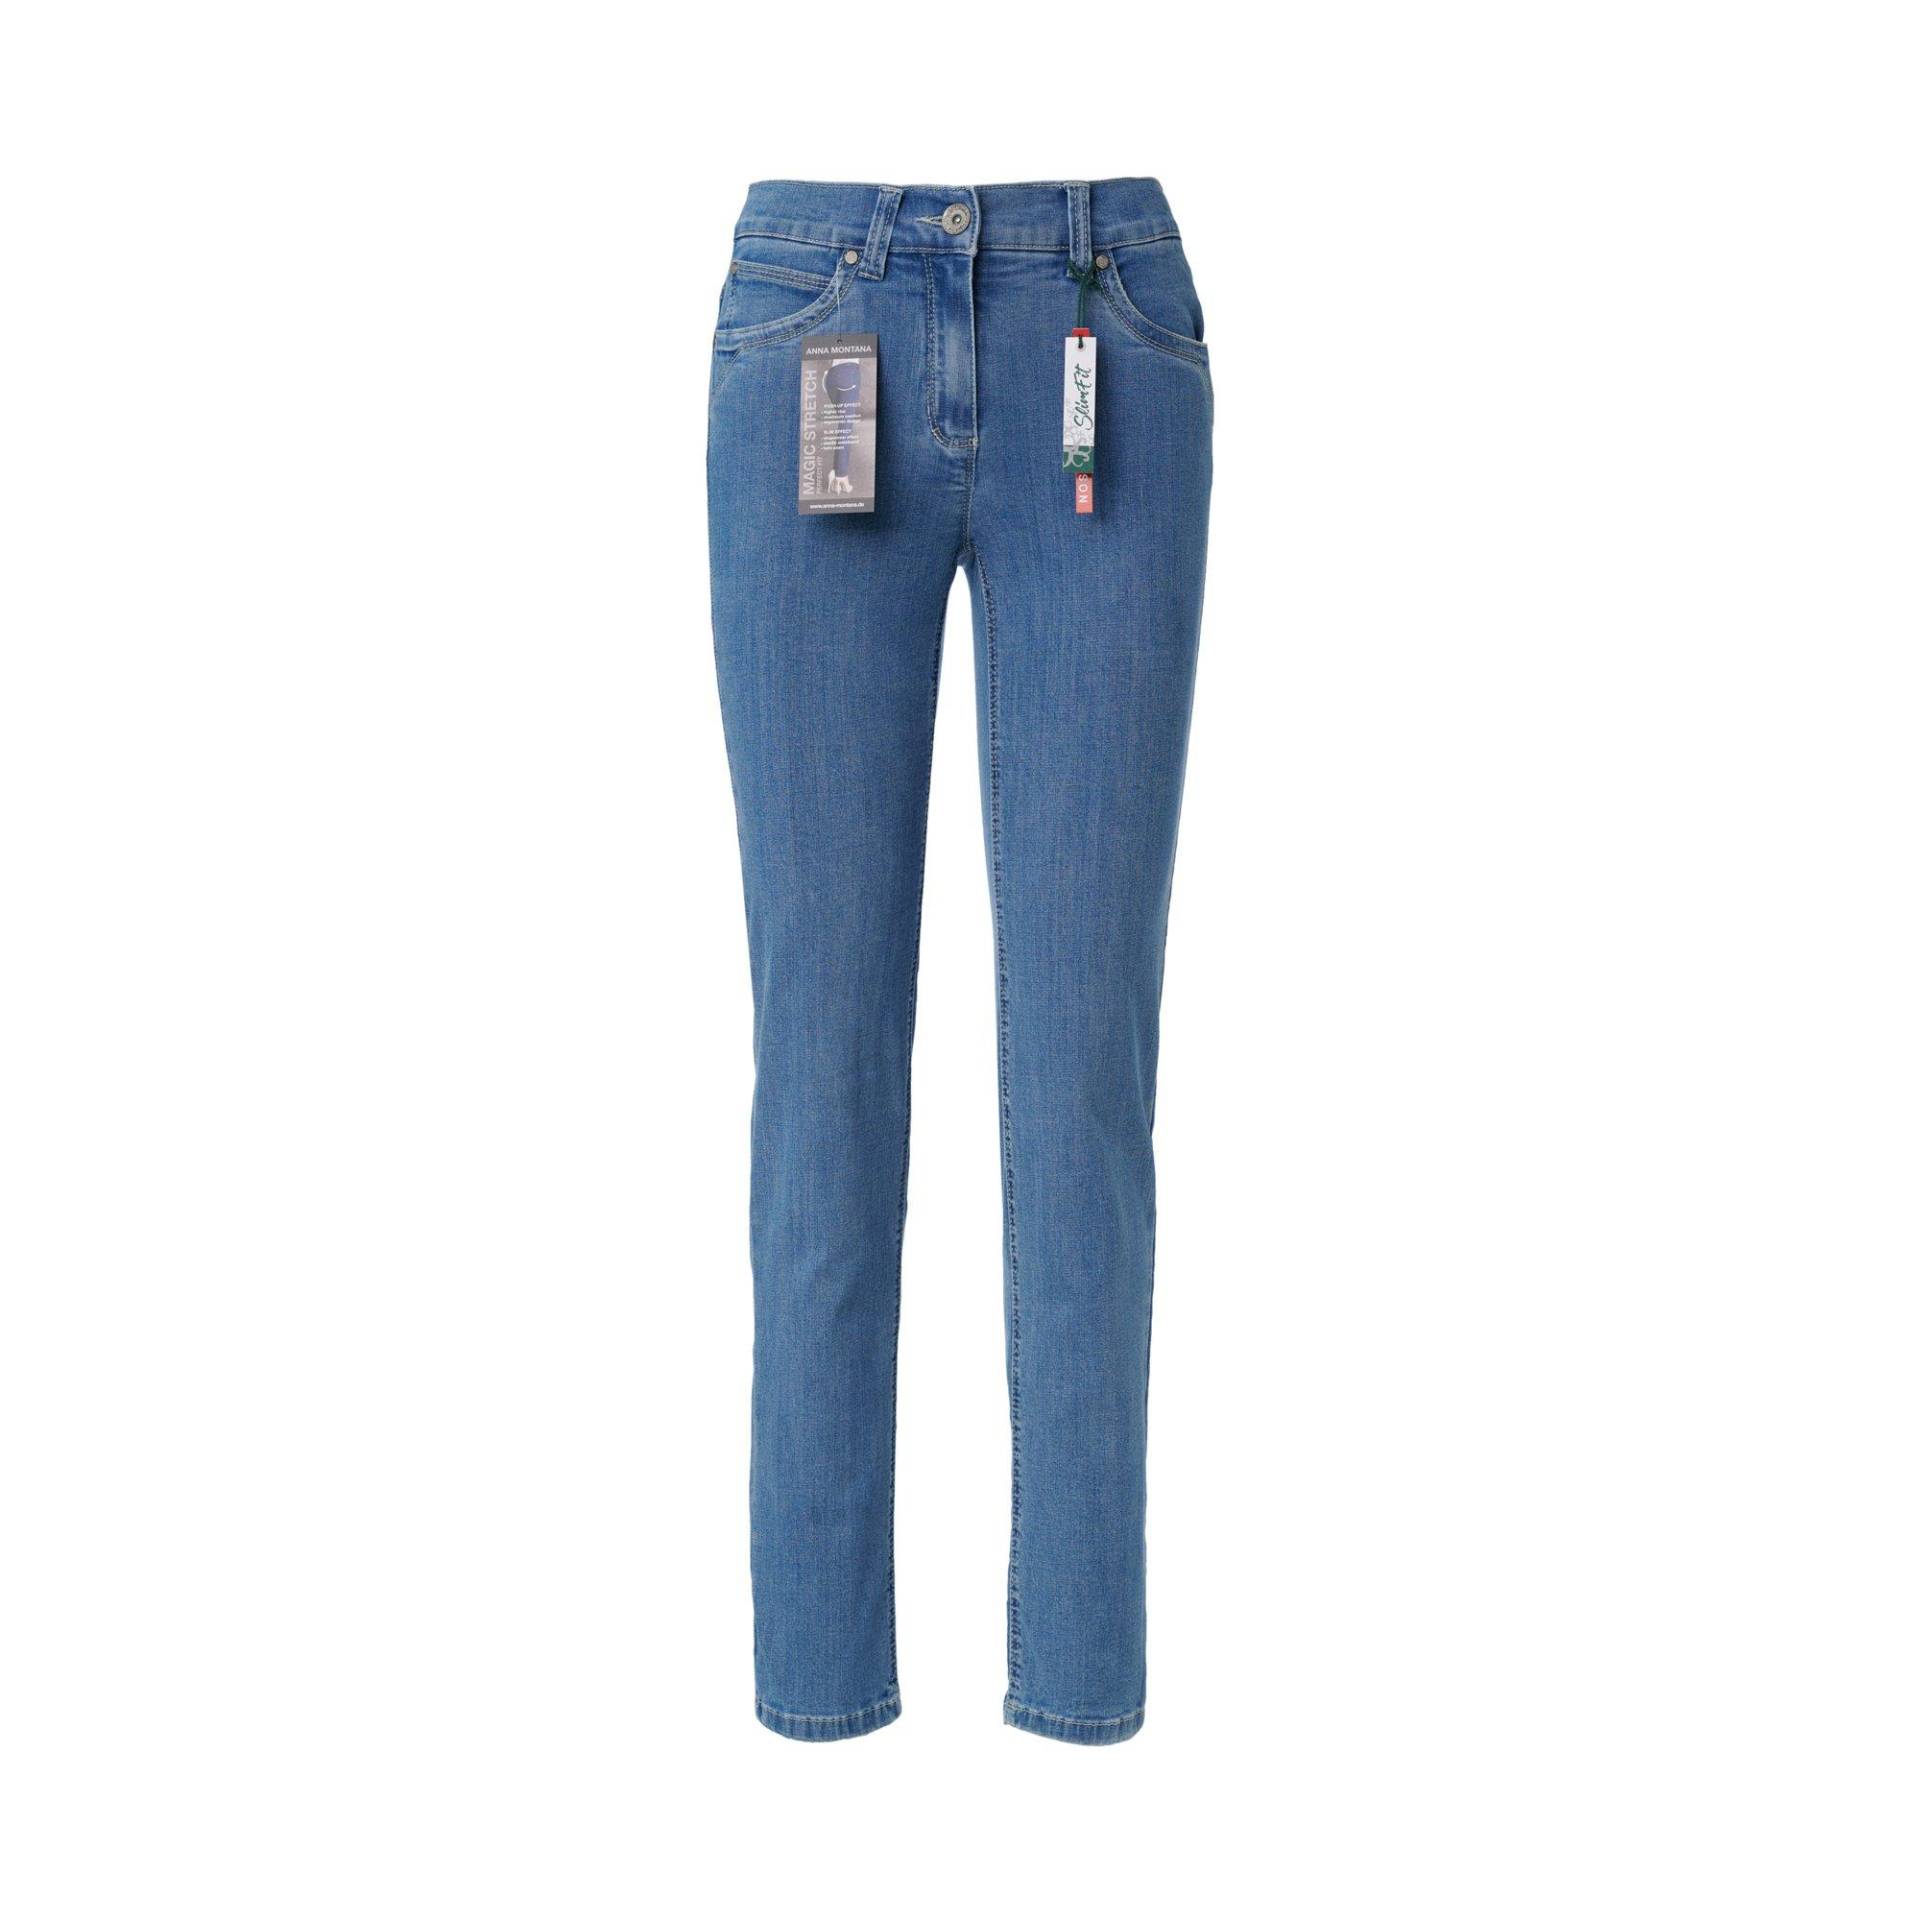 Jeans, Slim Fit Damen Bleached Blau 40 von ANNA MONTANA